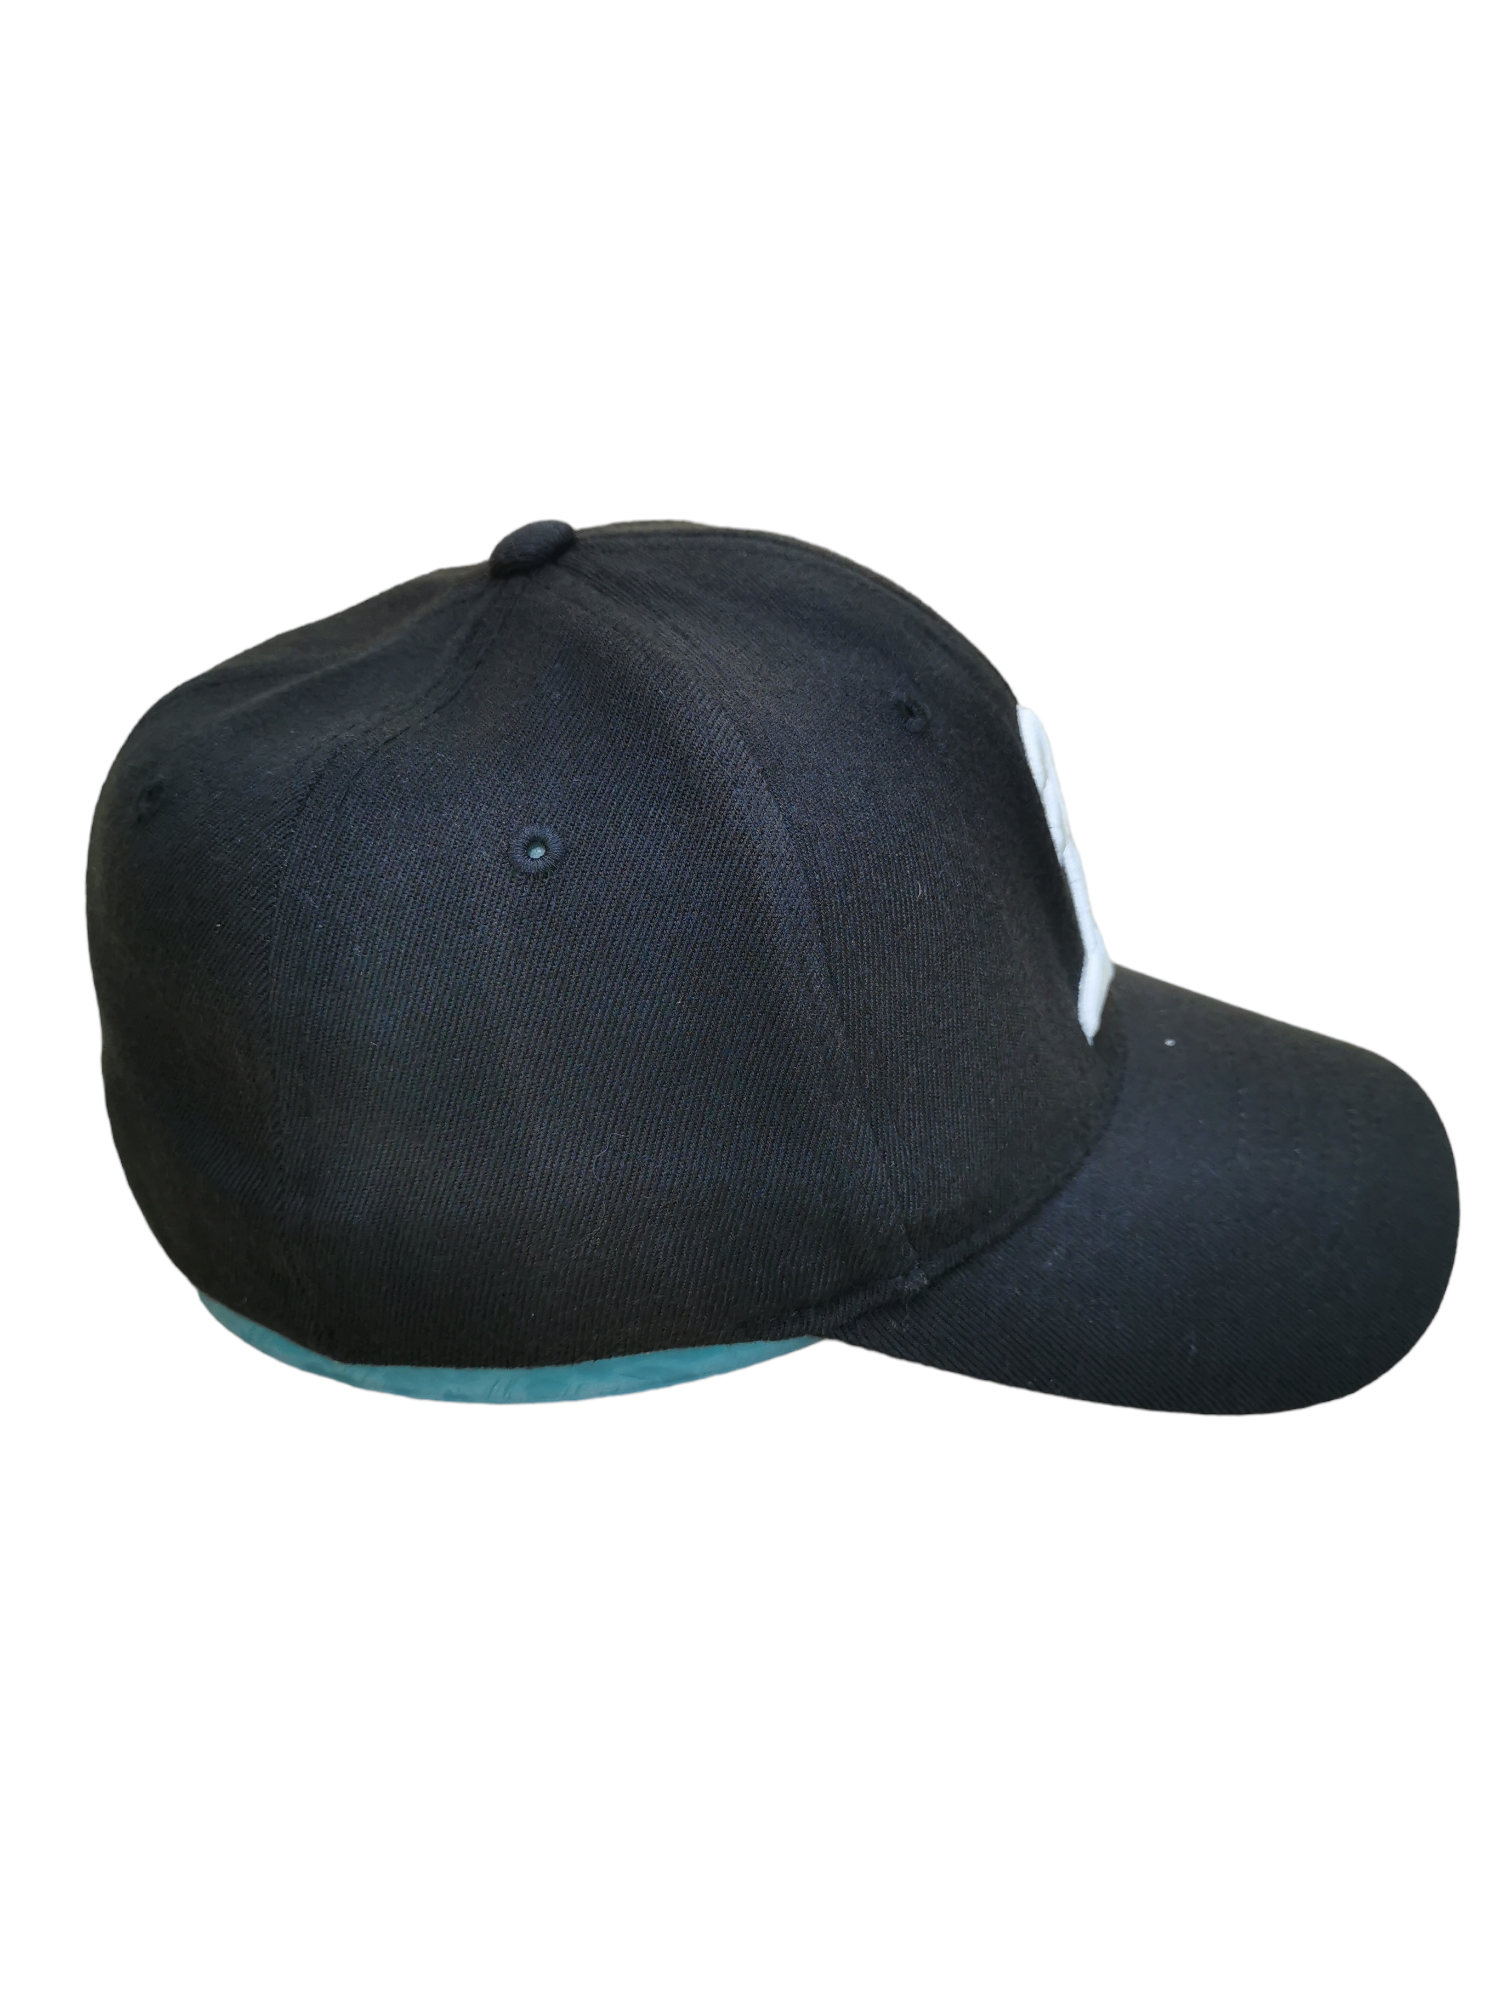 BIRKENSTOCK ARIZONA HAT CAP - 4